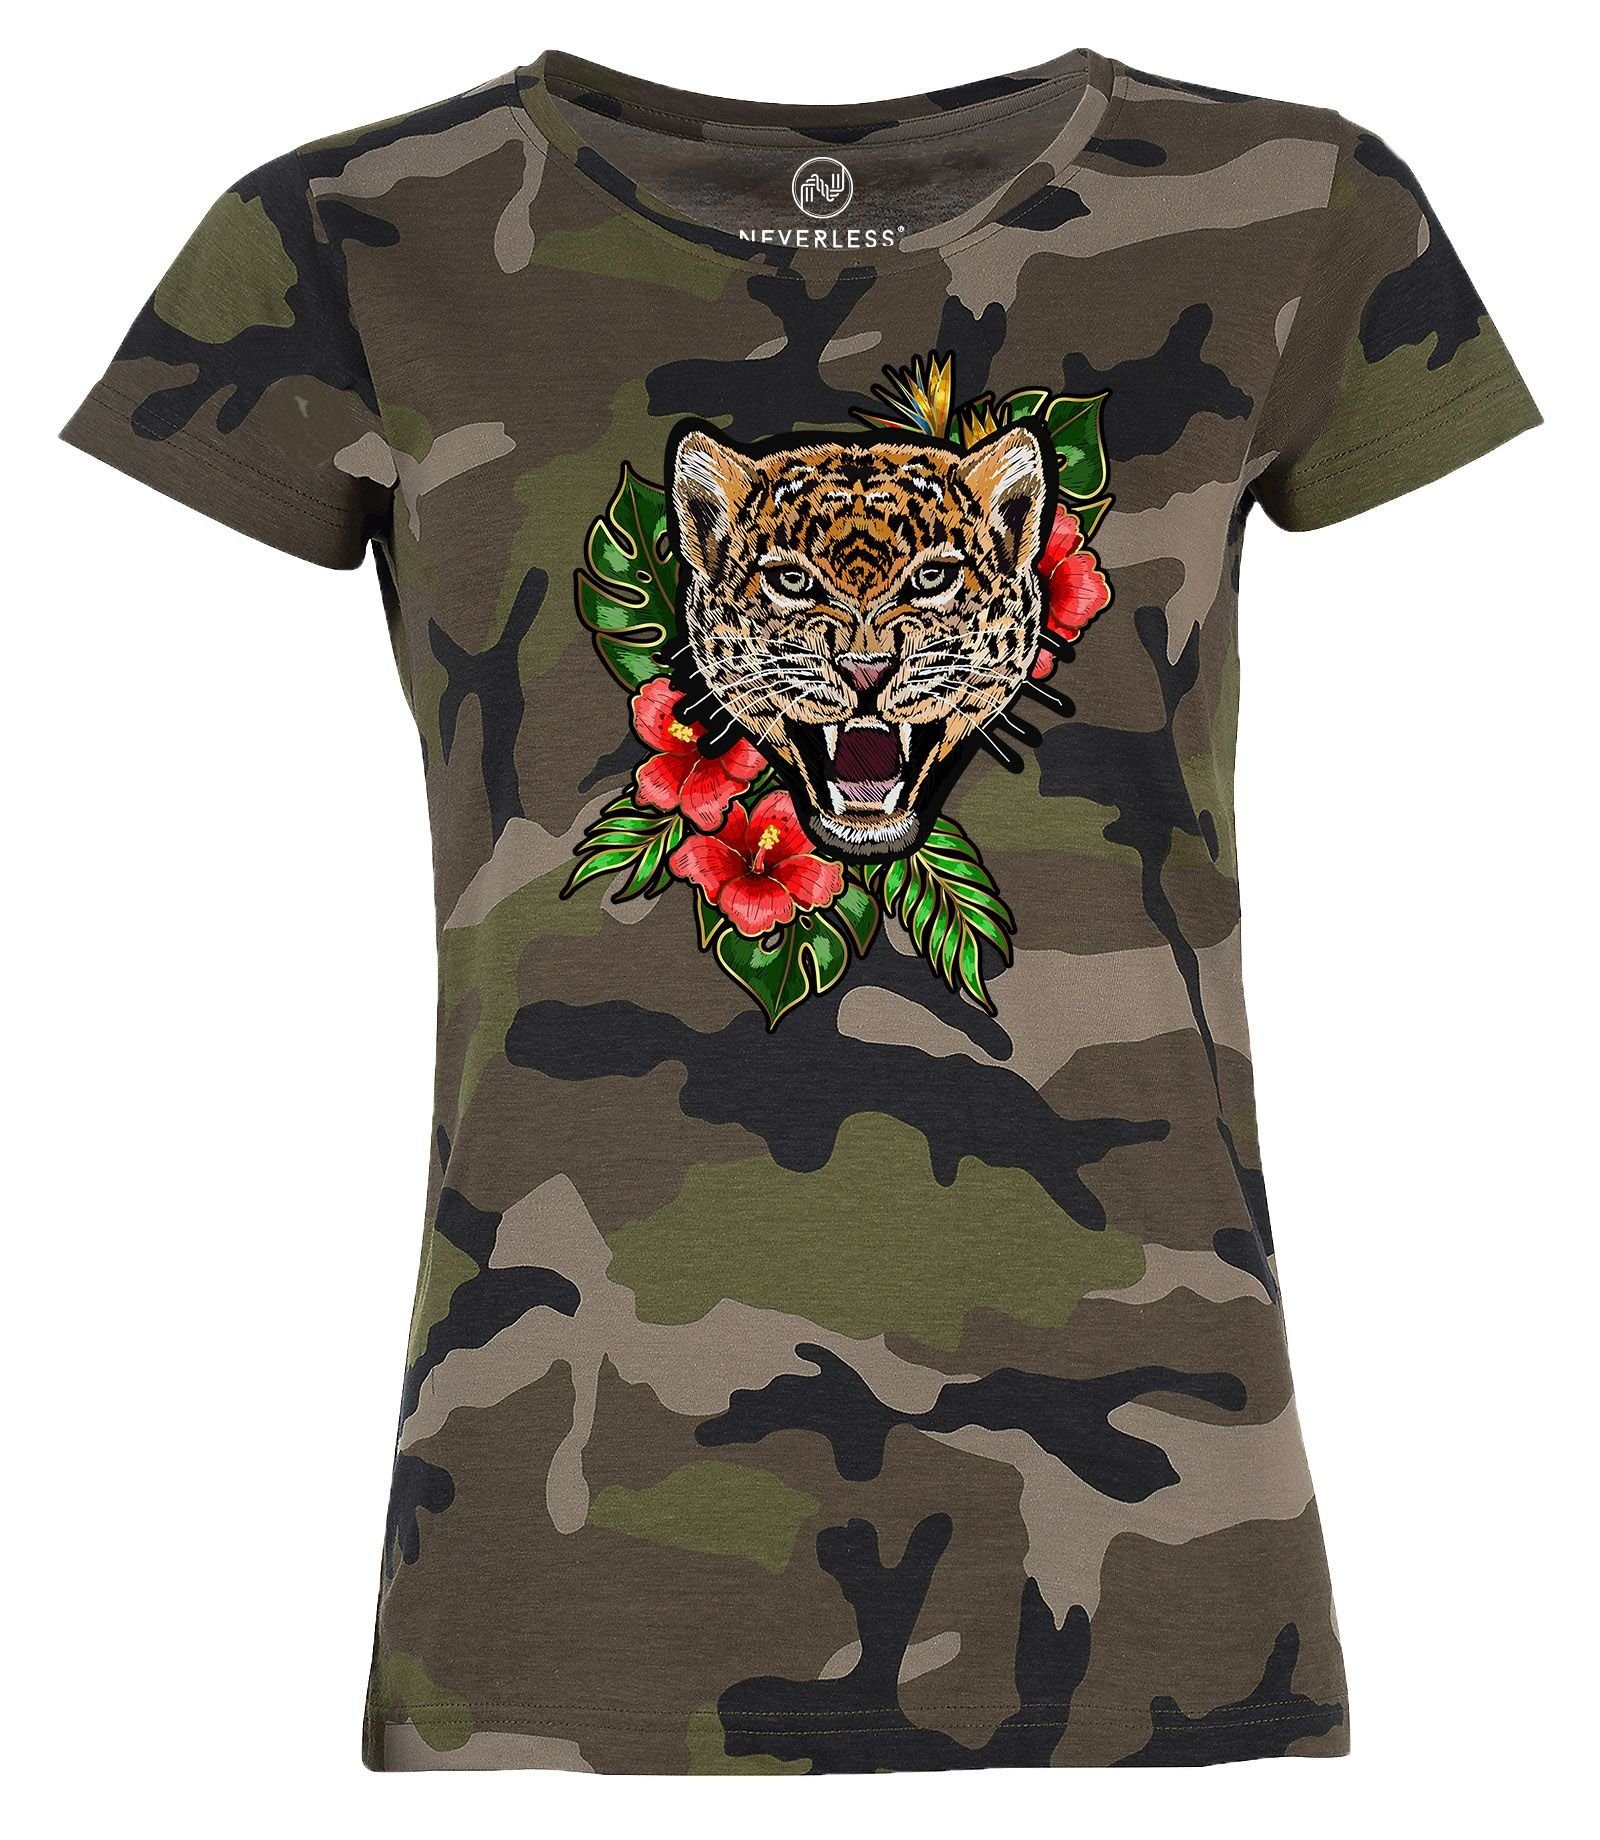 Neverless Print-Shirt »Damen T-Shirt Camouflage Camo-Shirt Tiger Tropical  Palmblätter Sommer Stick-Patch-Optik Tarnmuster Neverless®« mit Print  online kaufen | OTTO